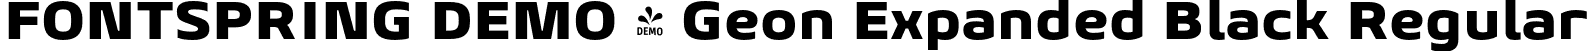 FONTSPRING DEMO - Geon Expanded Black Regular font - Fontspring-DEMO-geonexpanded-black.otf